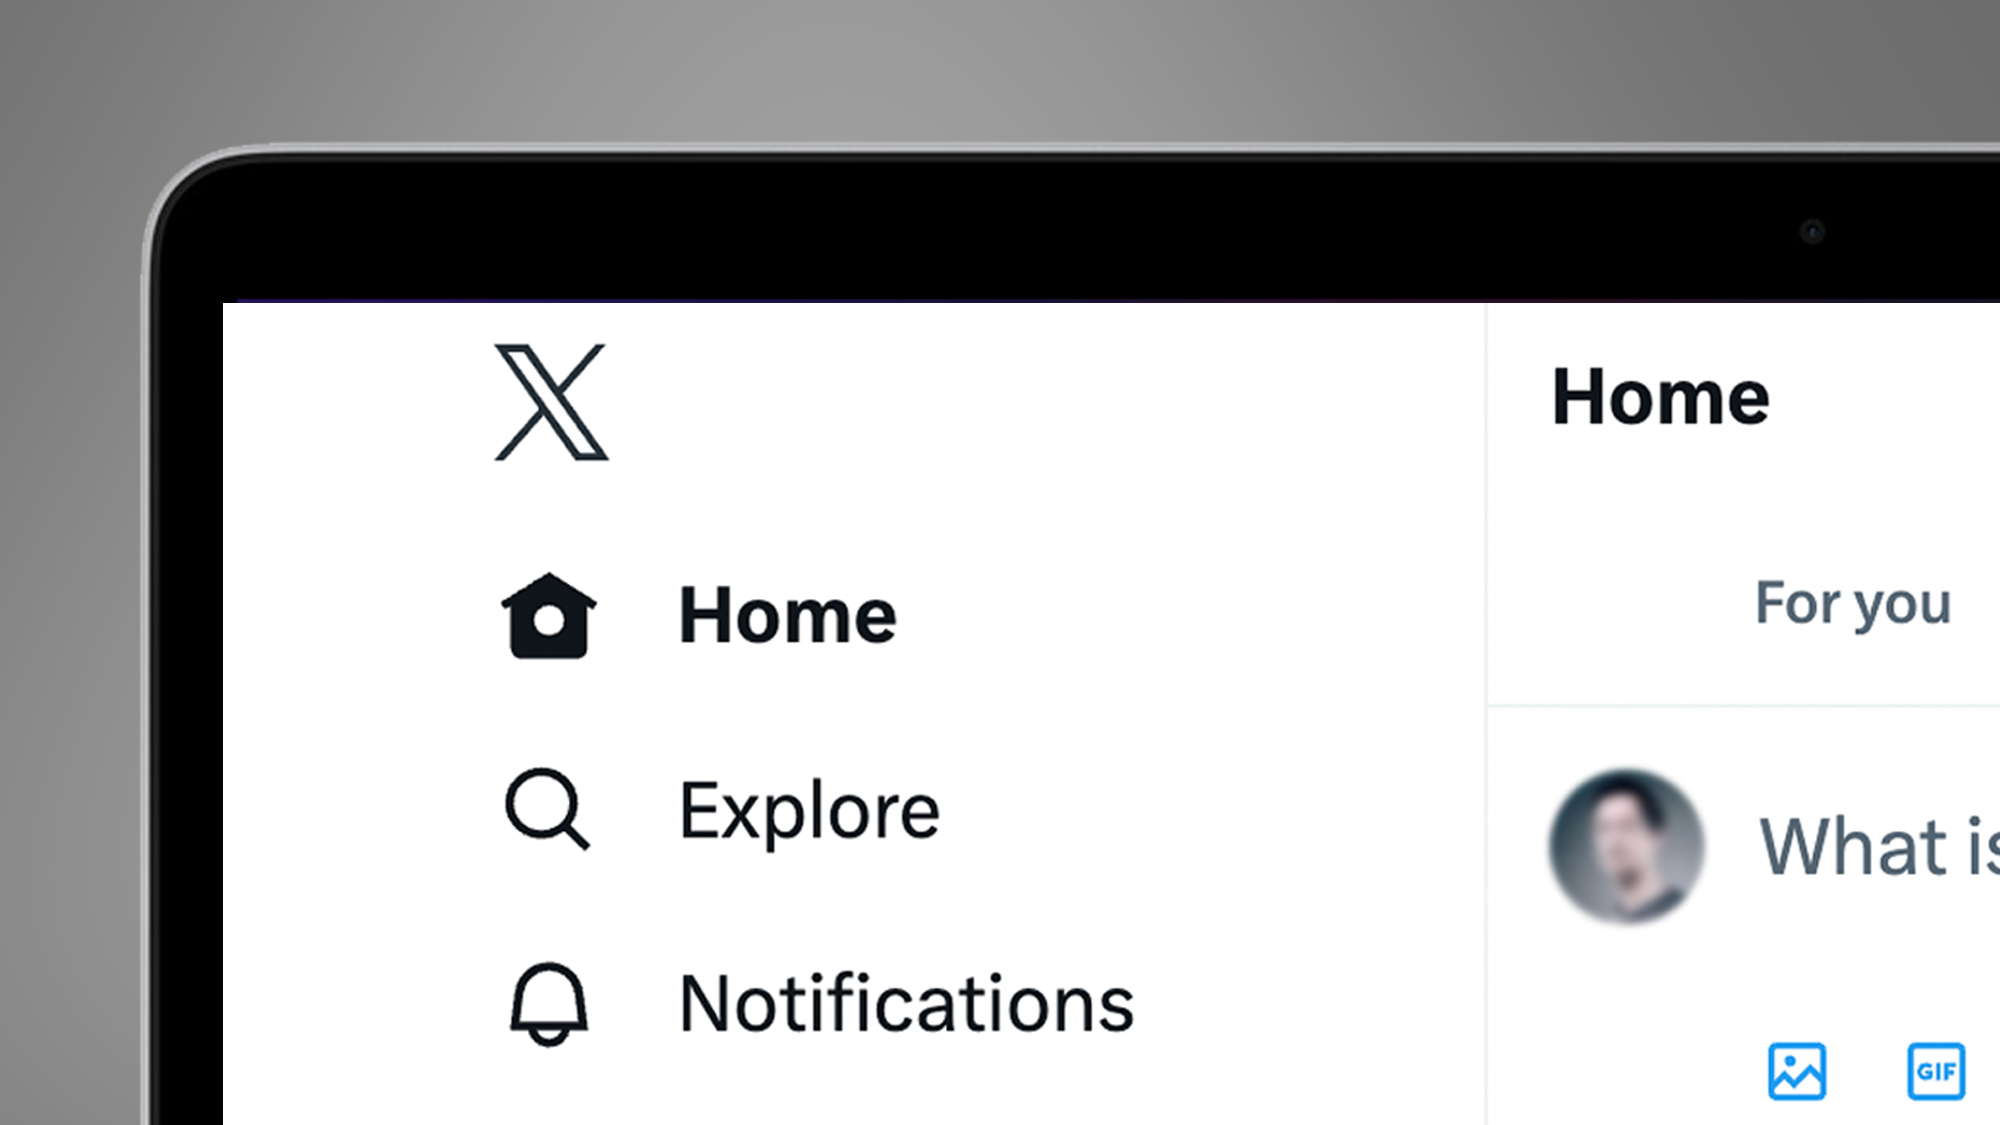 Ноутбук на сером фоне показывает главный экран Twitter с новым логотипом X.